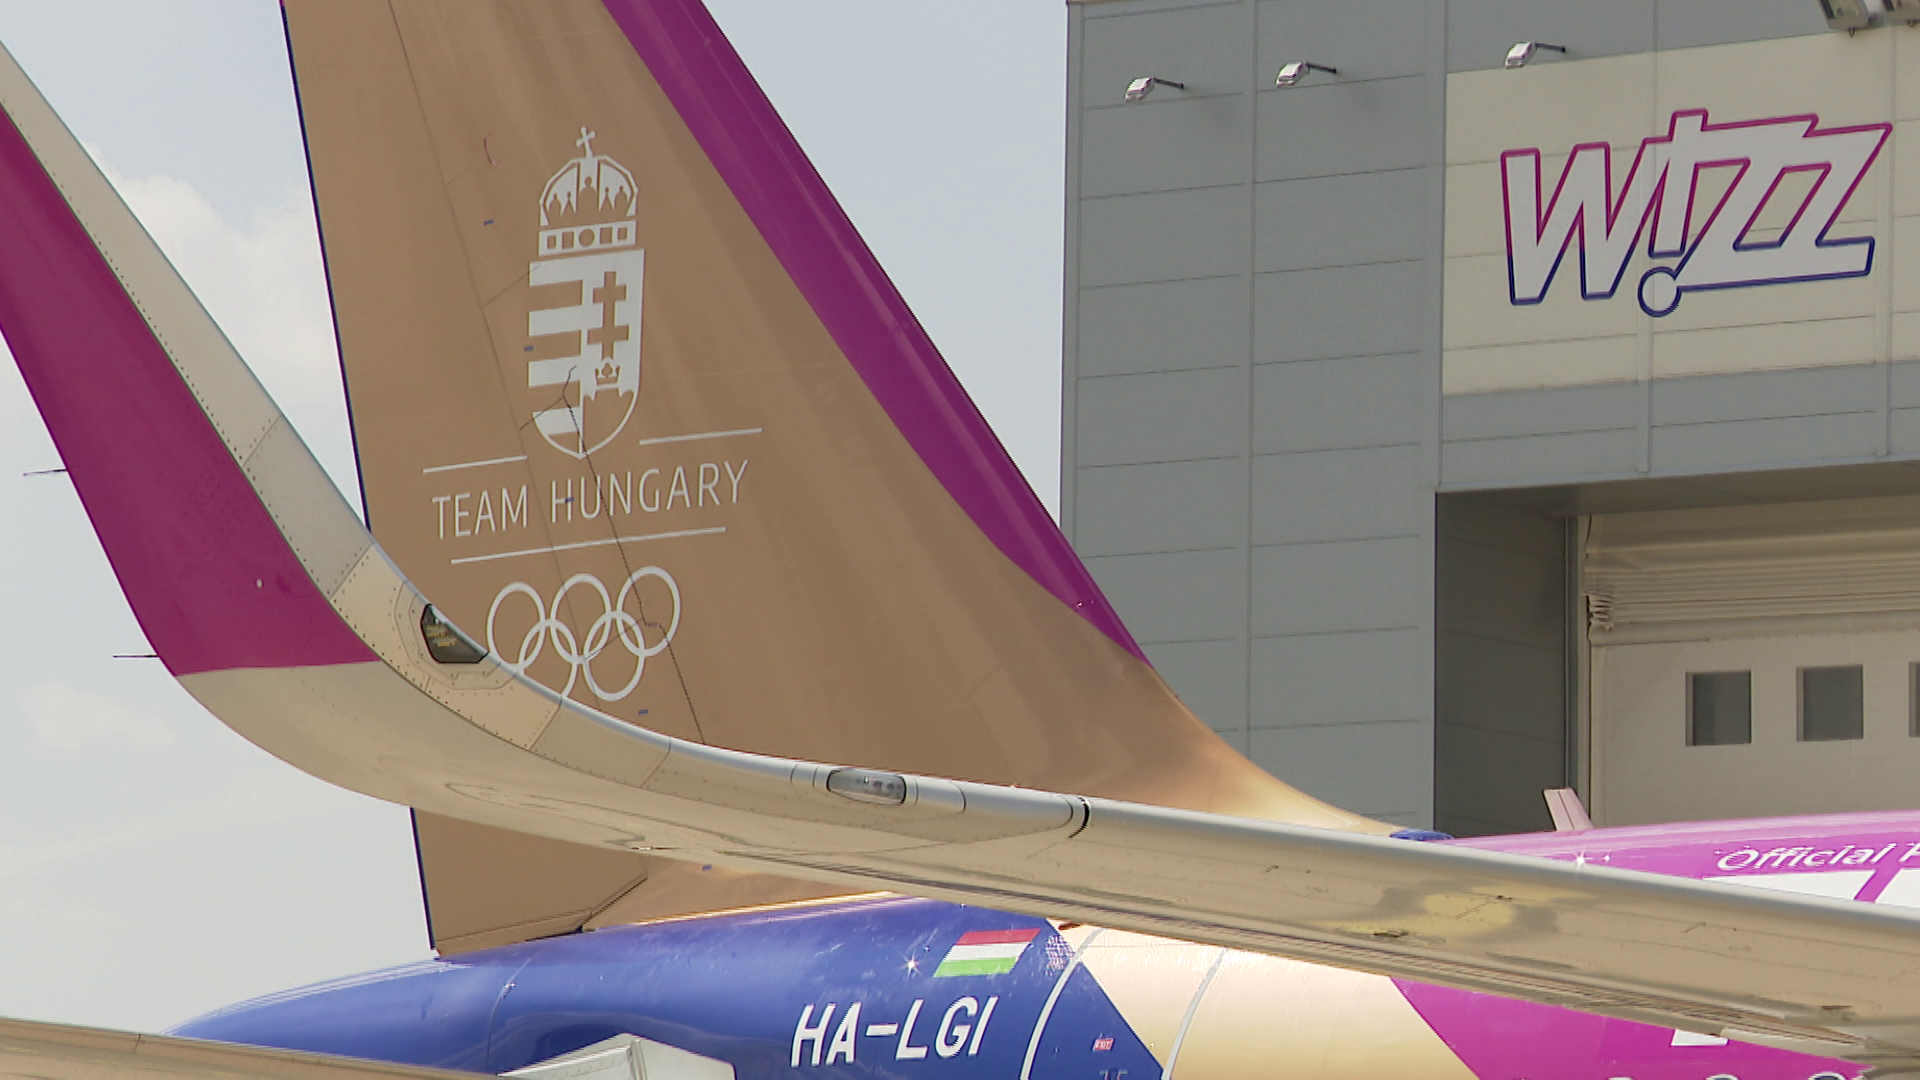 Radar – Speciális grafikával díszítették fel a magyar olimpiai csapatot szállító repülőgépet + videó